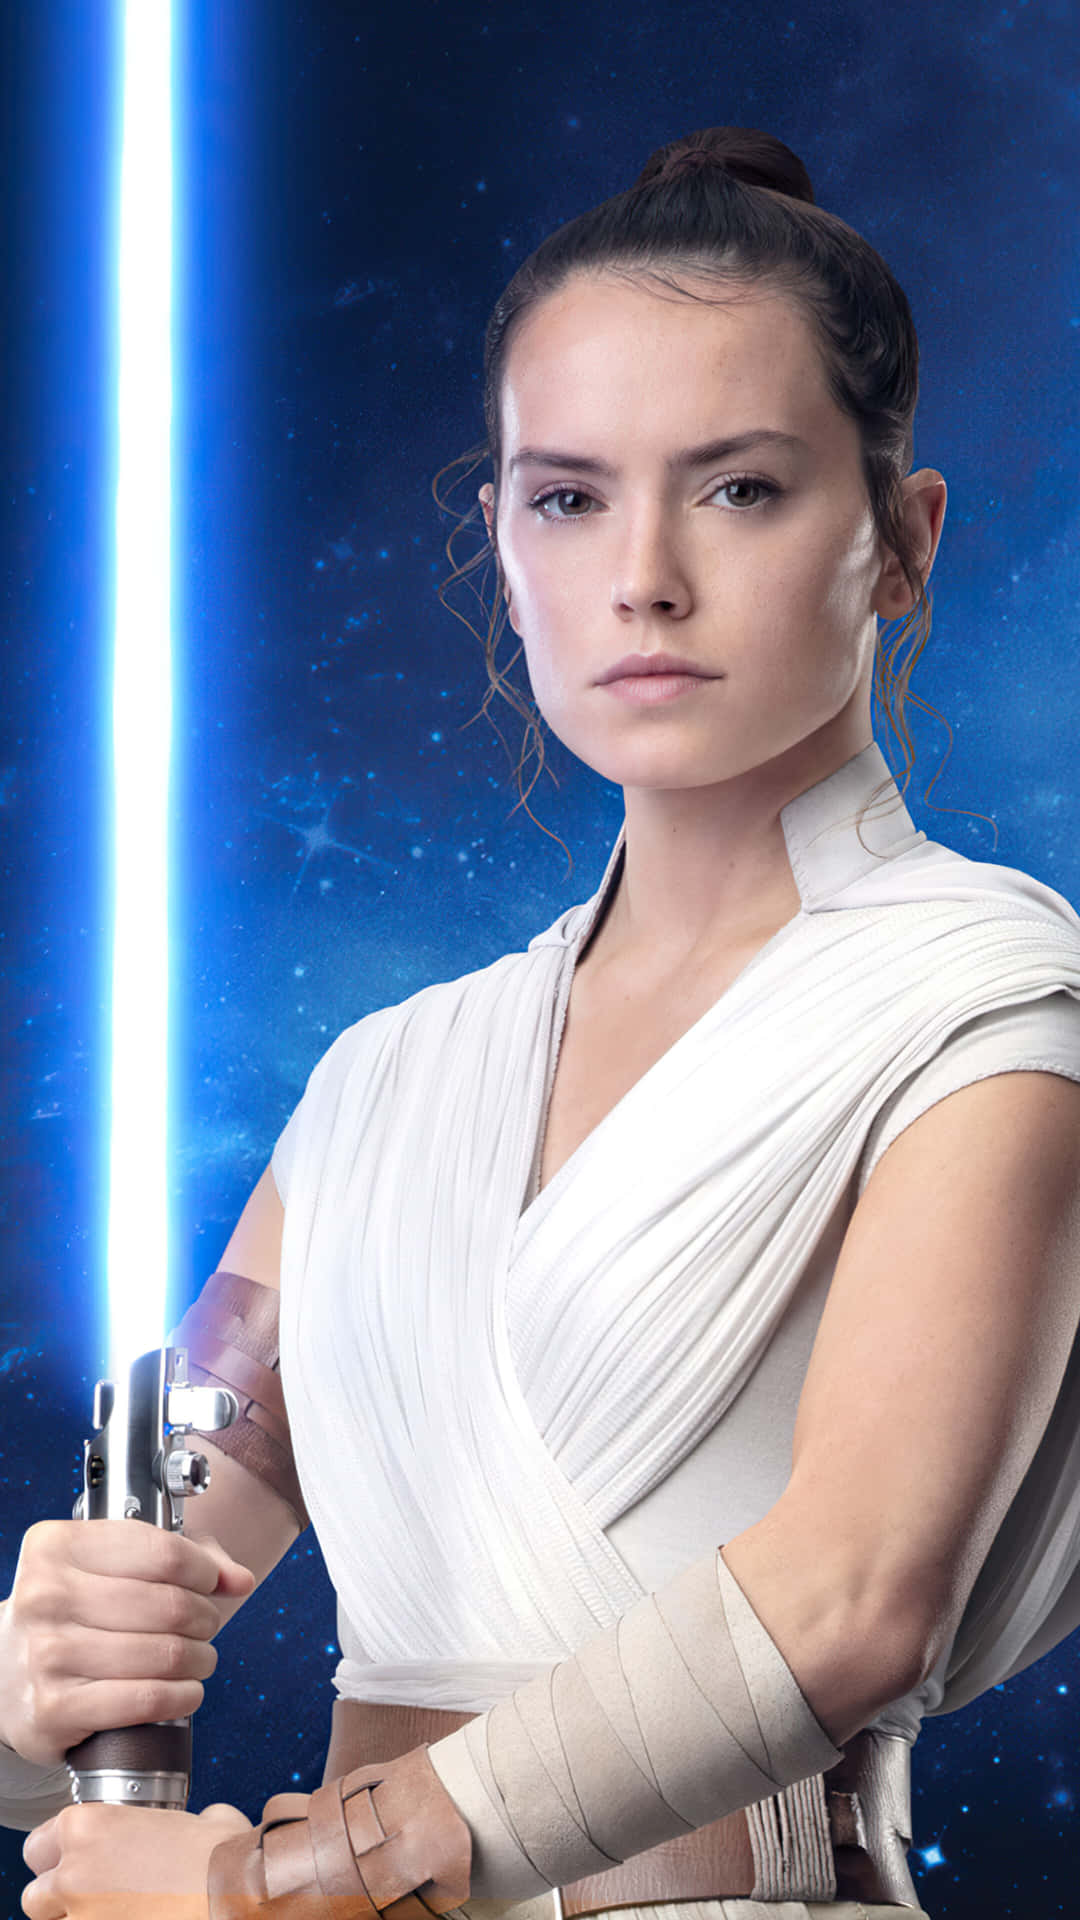 Rey Star Wars Background Wallpaper